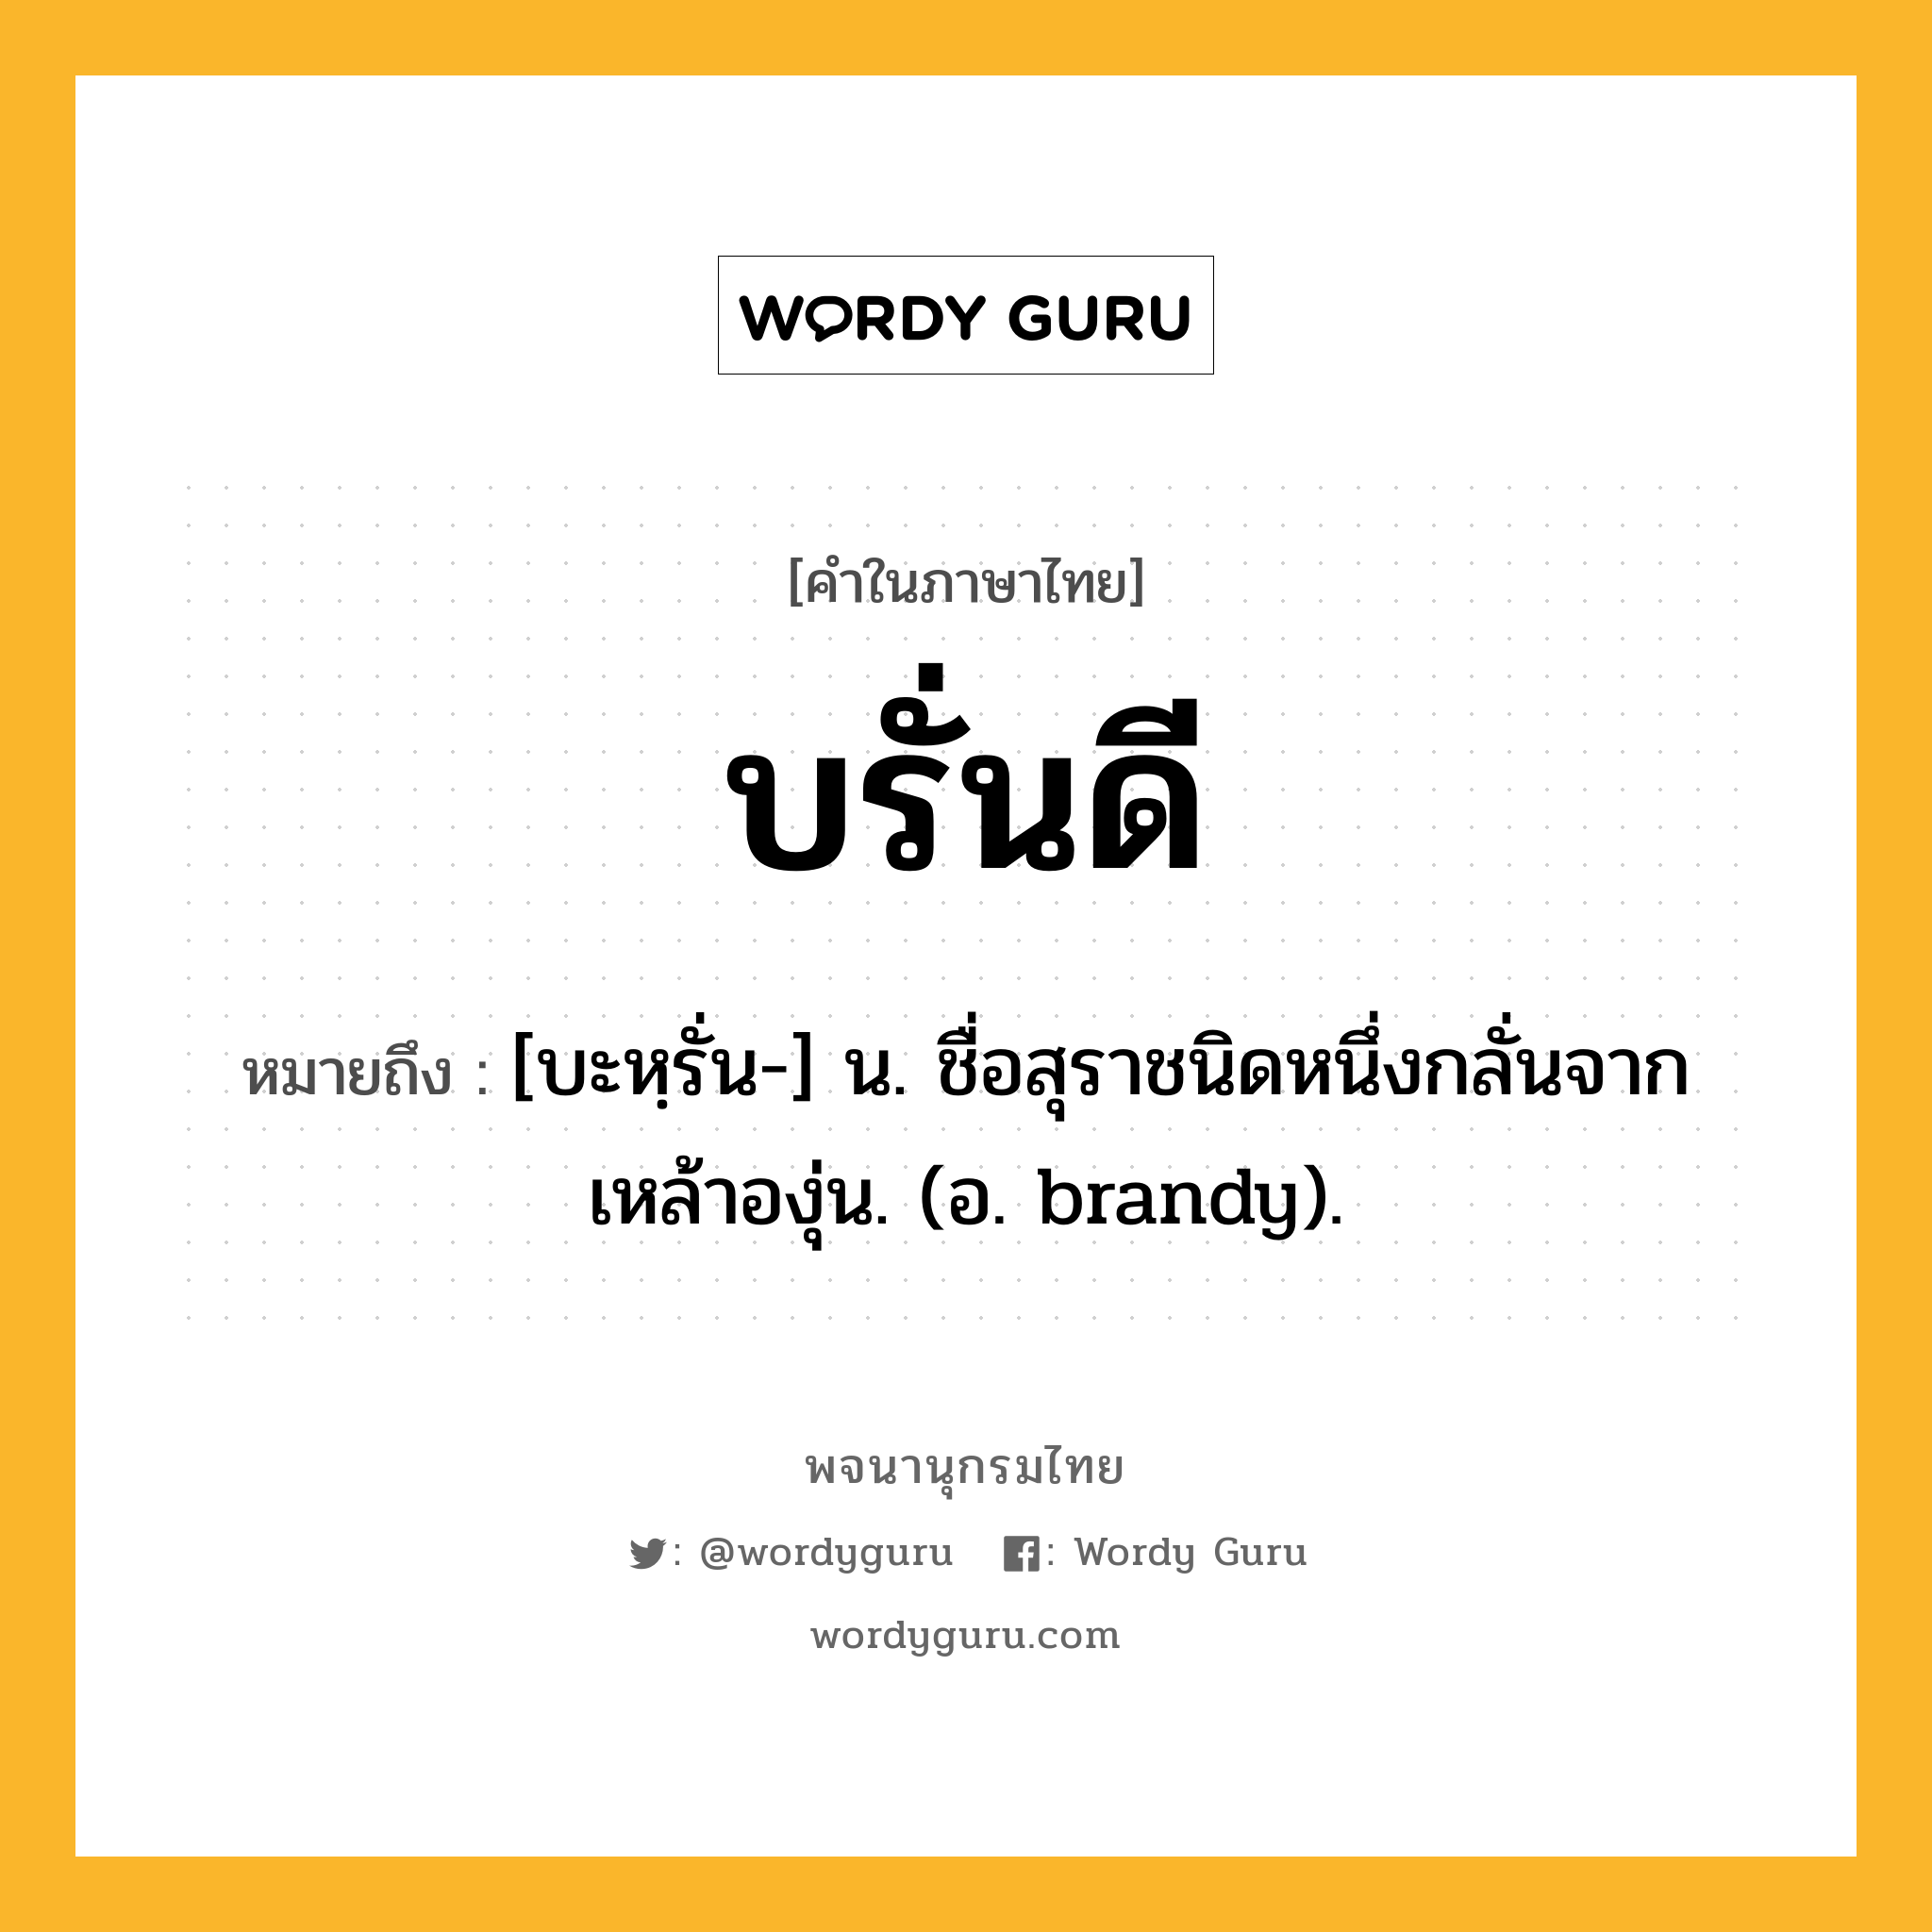 บรั่นดี ความหมาย หมายถึงอะไร?, คำในภาษาไทย บรั่นดี หมายถึง [บะหฺรั่น-] น. ชื่อสุราชนิดหนึ่งกลั่นจากเหล้าองุ่น. (อ. brandy).